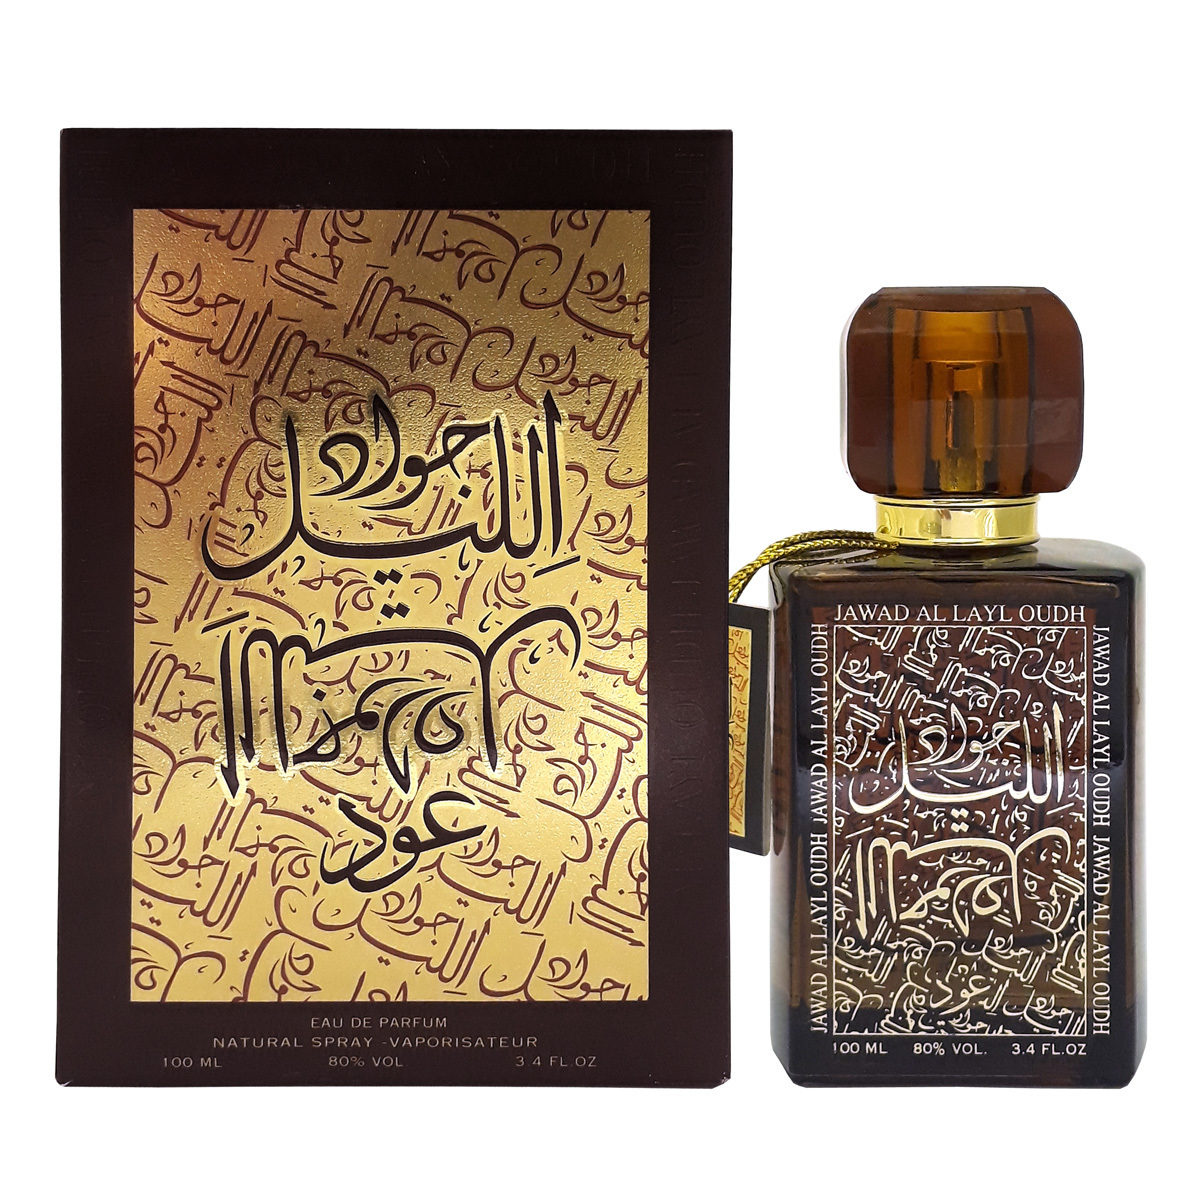 Пробник для Jawad al Layl Oudh  Джавад Аль Лайл Уд 1 мл спрей от Халис Khalis Perfumes